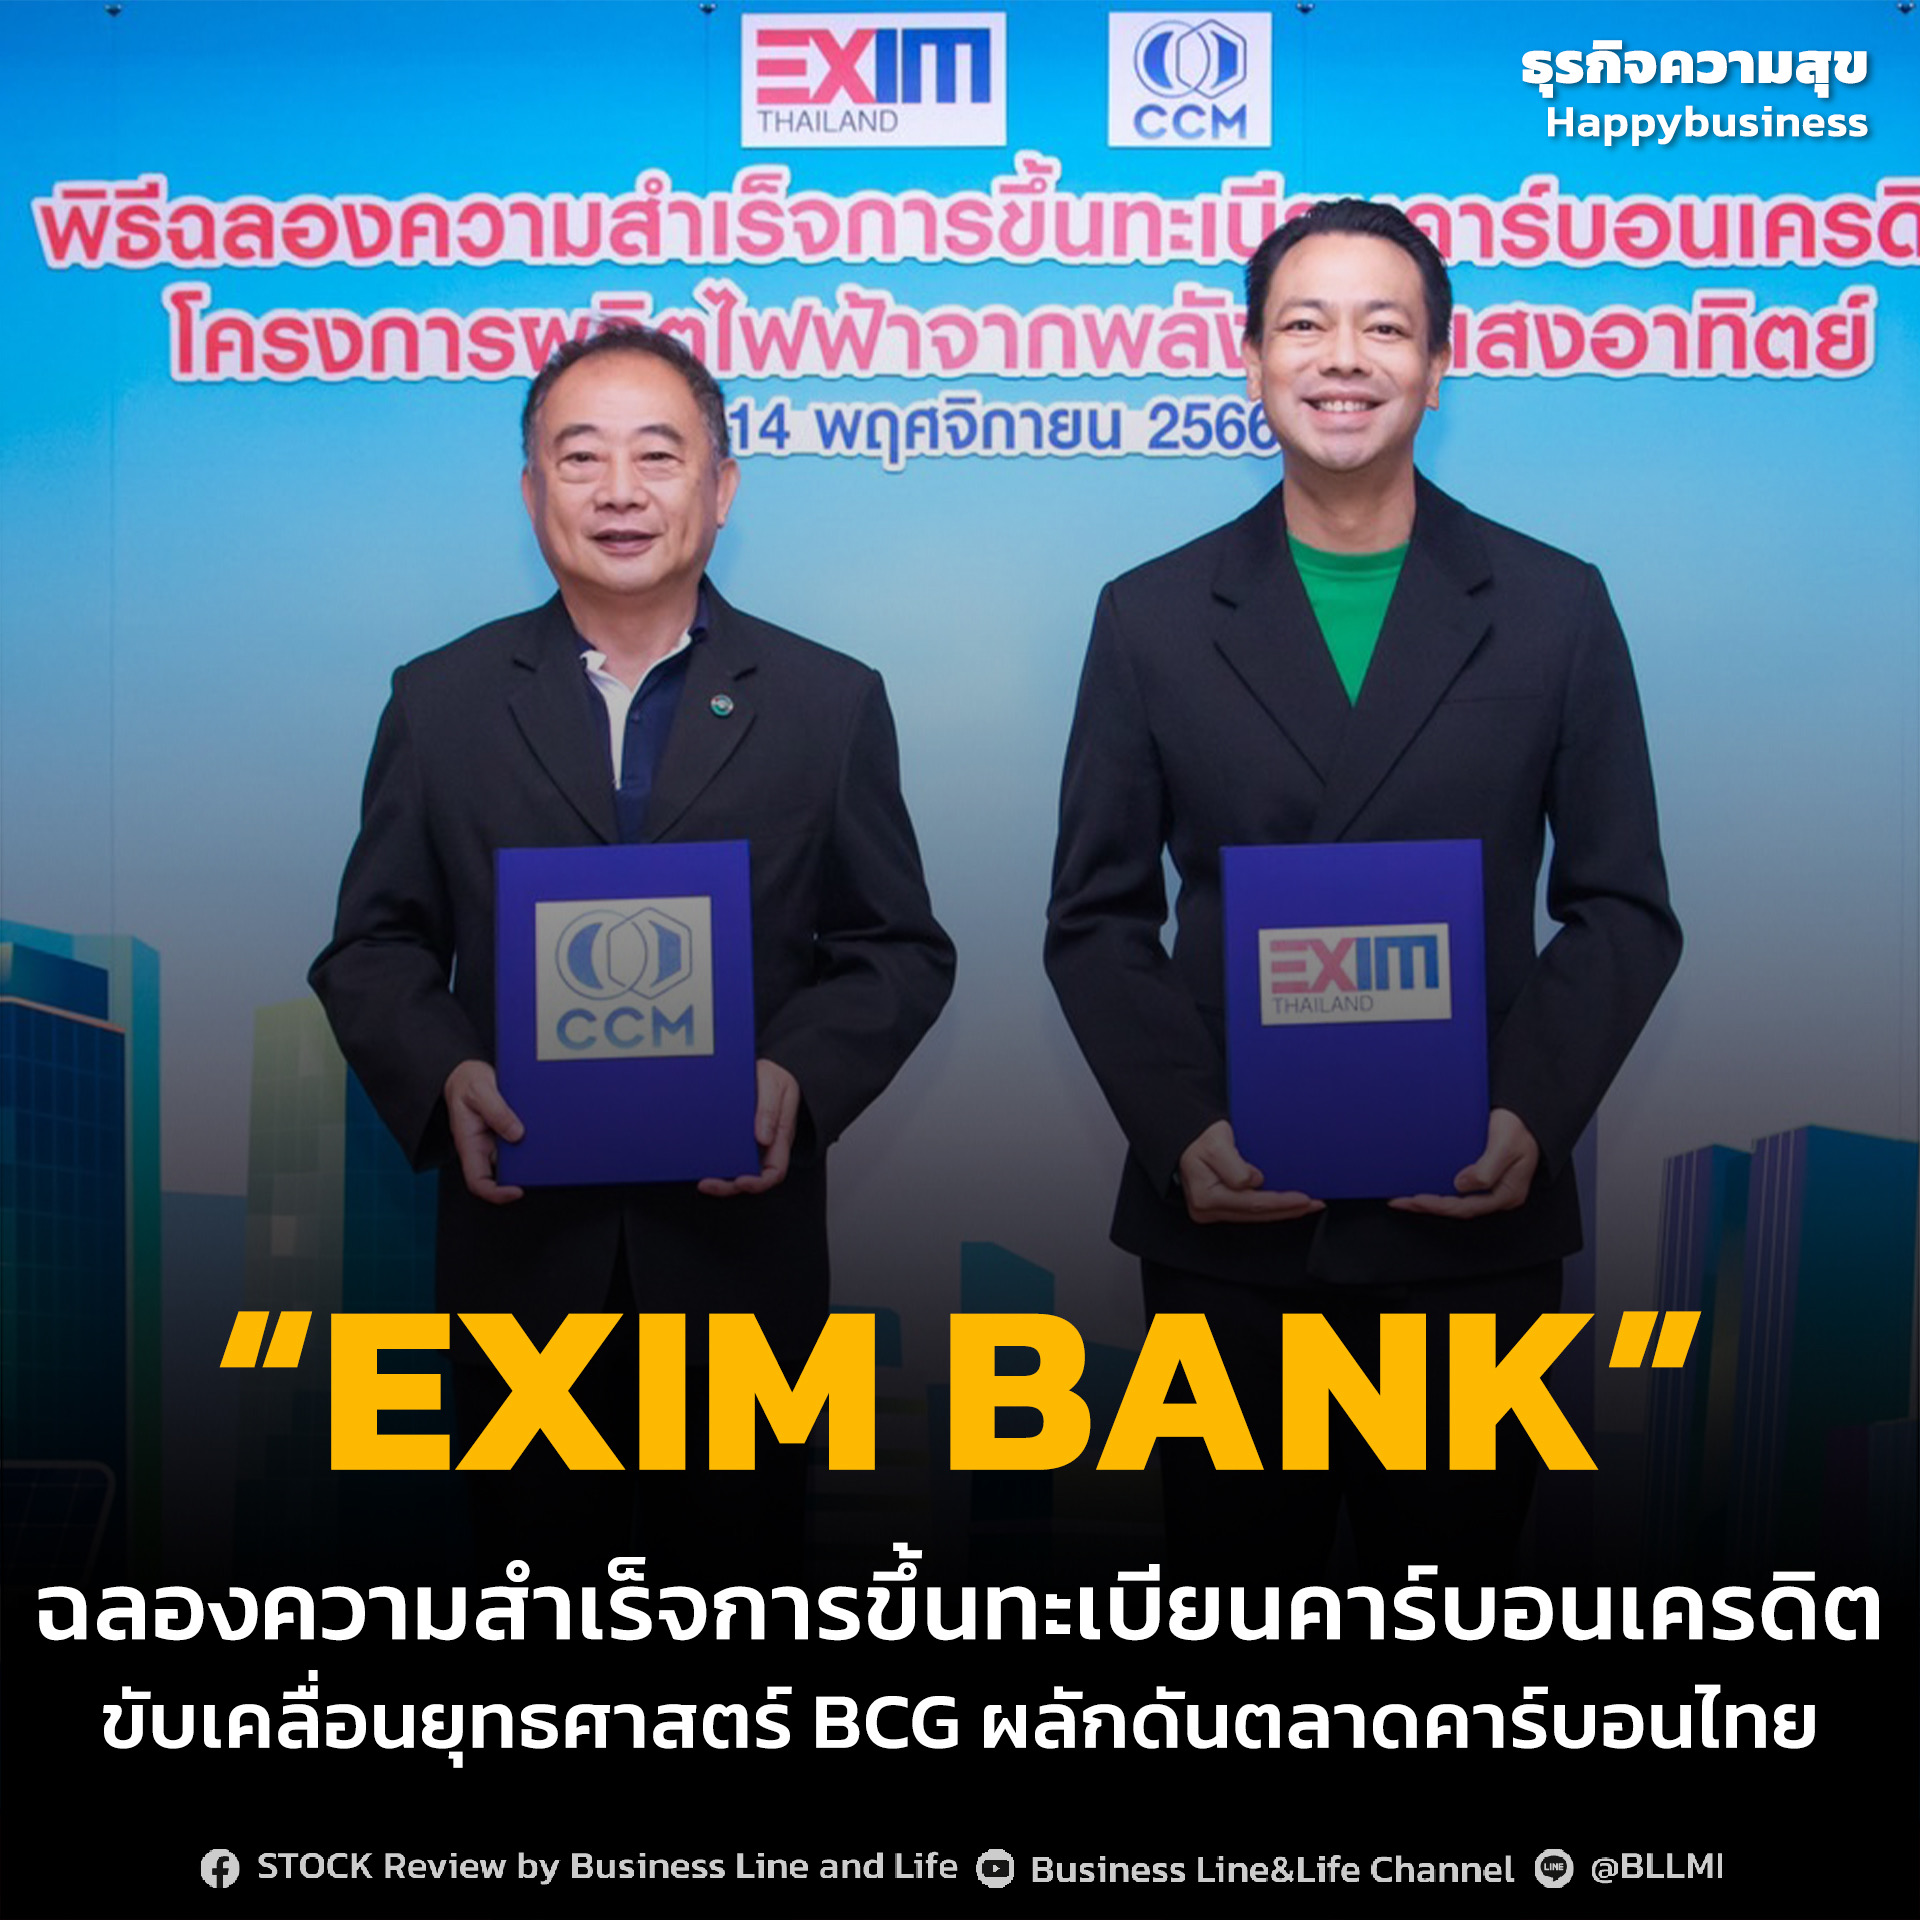 EXIM BANK ฉลองความสำเร็จการขึ้นทะเบียนคาร์บอนเครดิต ขับเคลื่อนยุทธศาสตร์ BCG ผลักดันตลาดคาร์บอนไทย